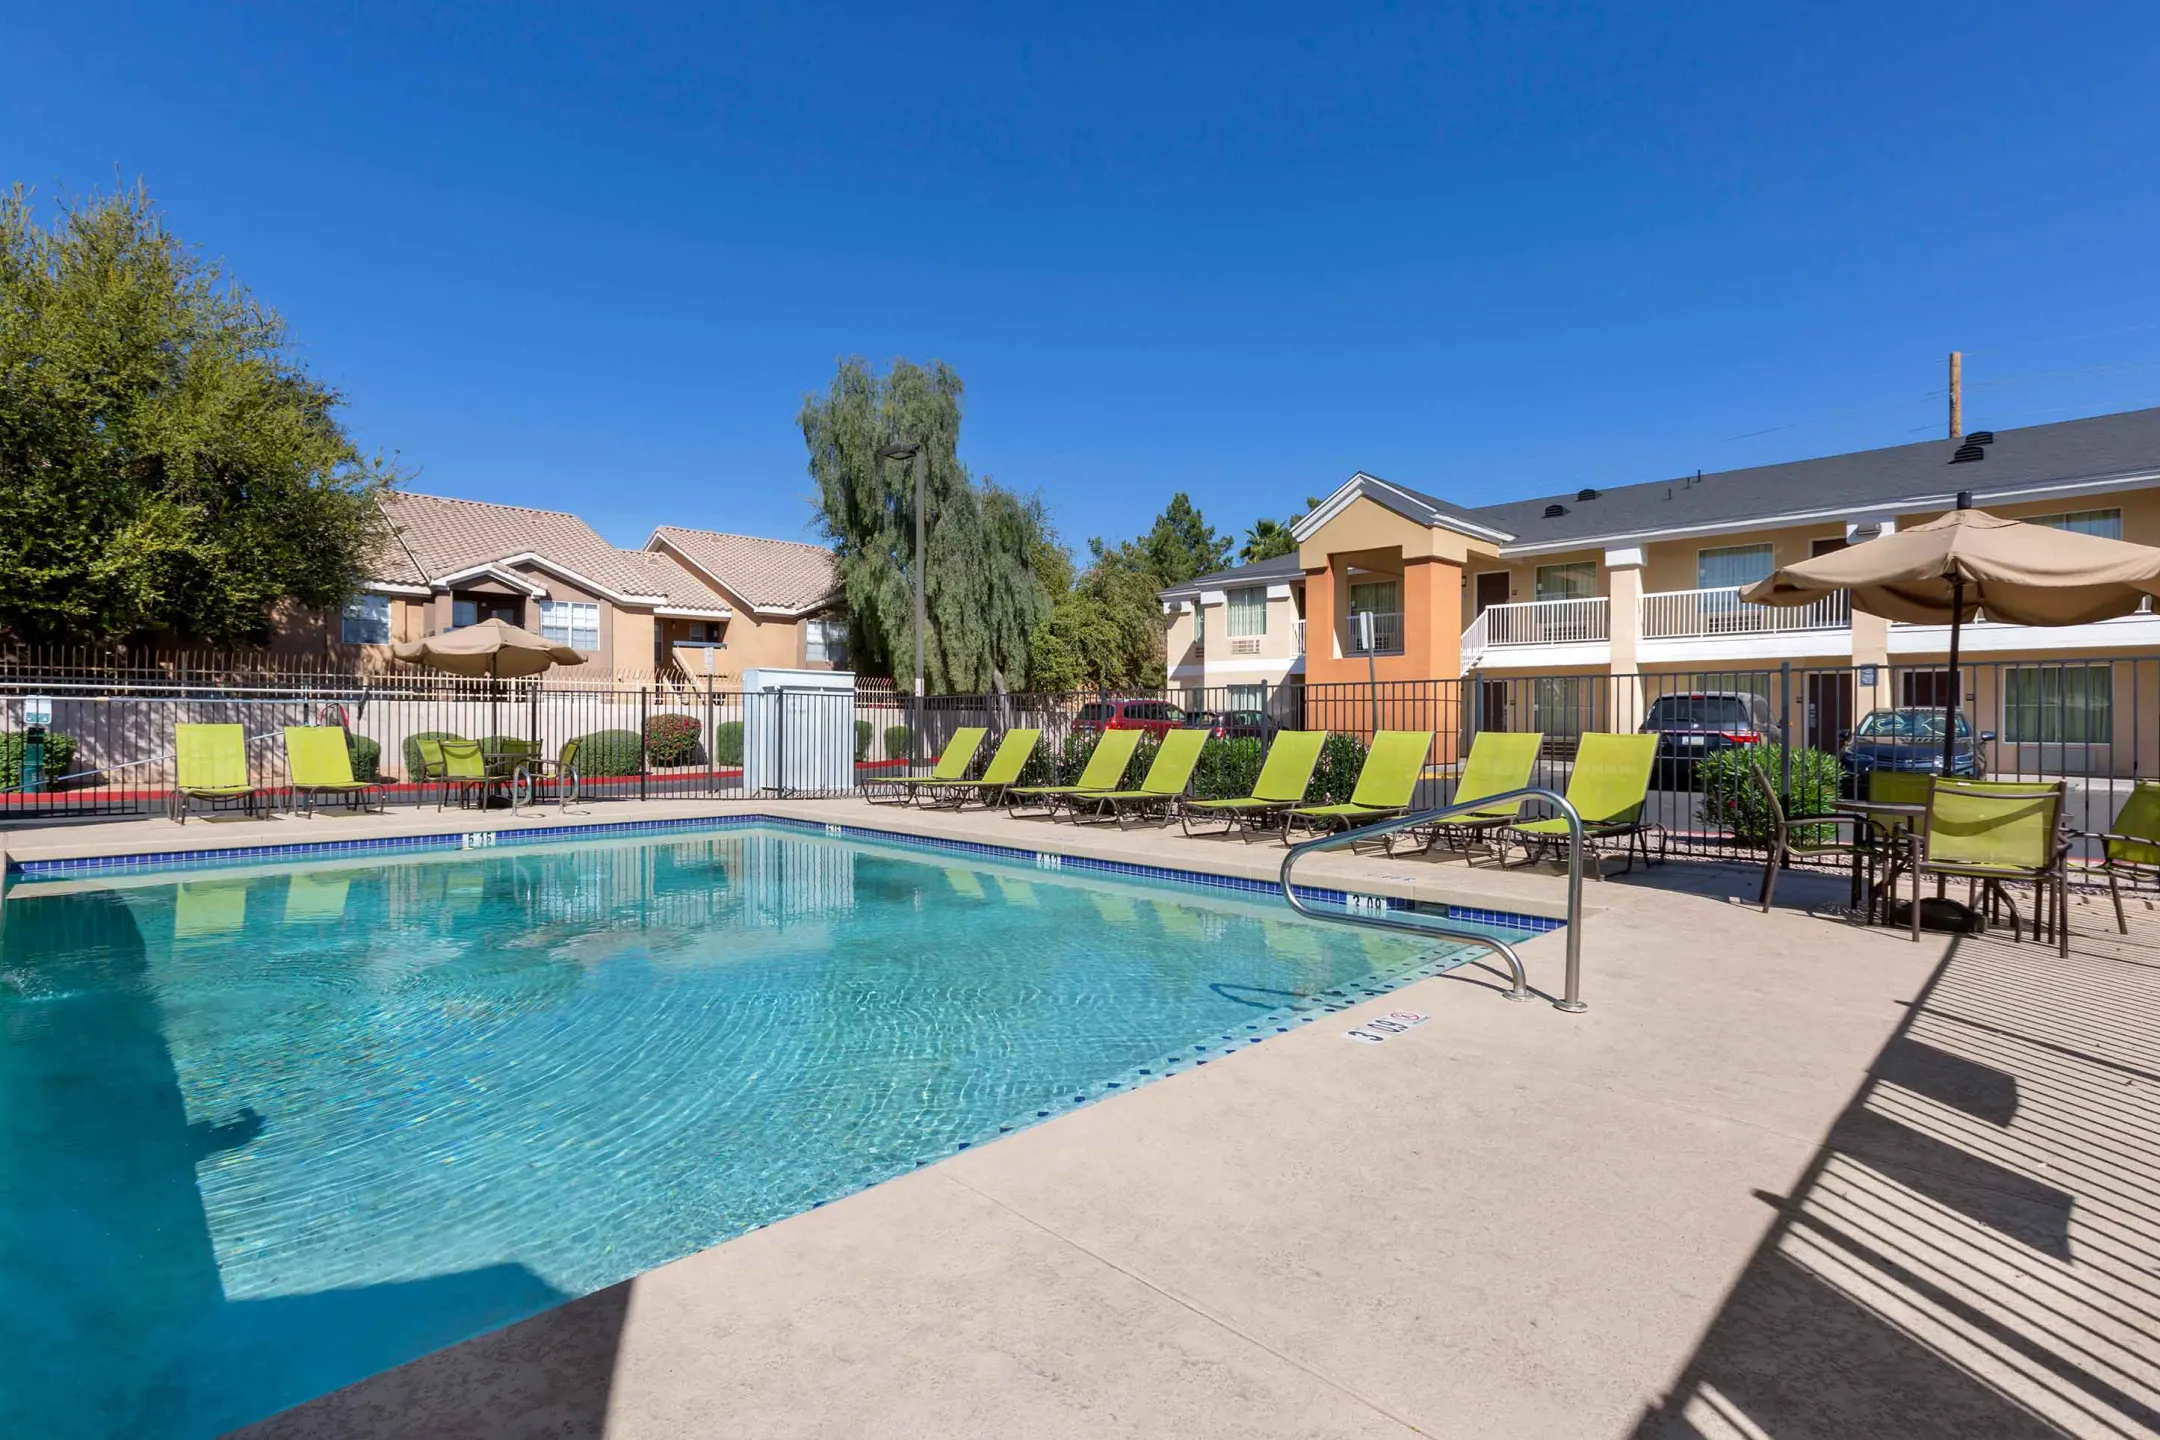 Pool - Furnished Studio - Phoenix - Airport - E. Oak St. - Phoenix, AZ